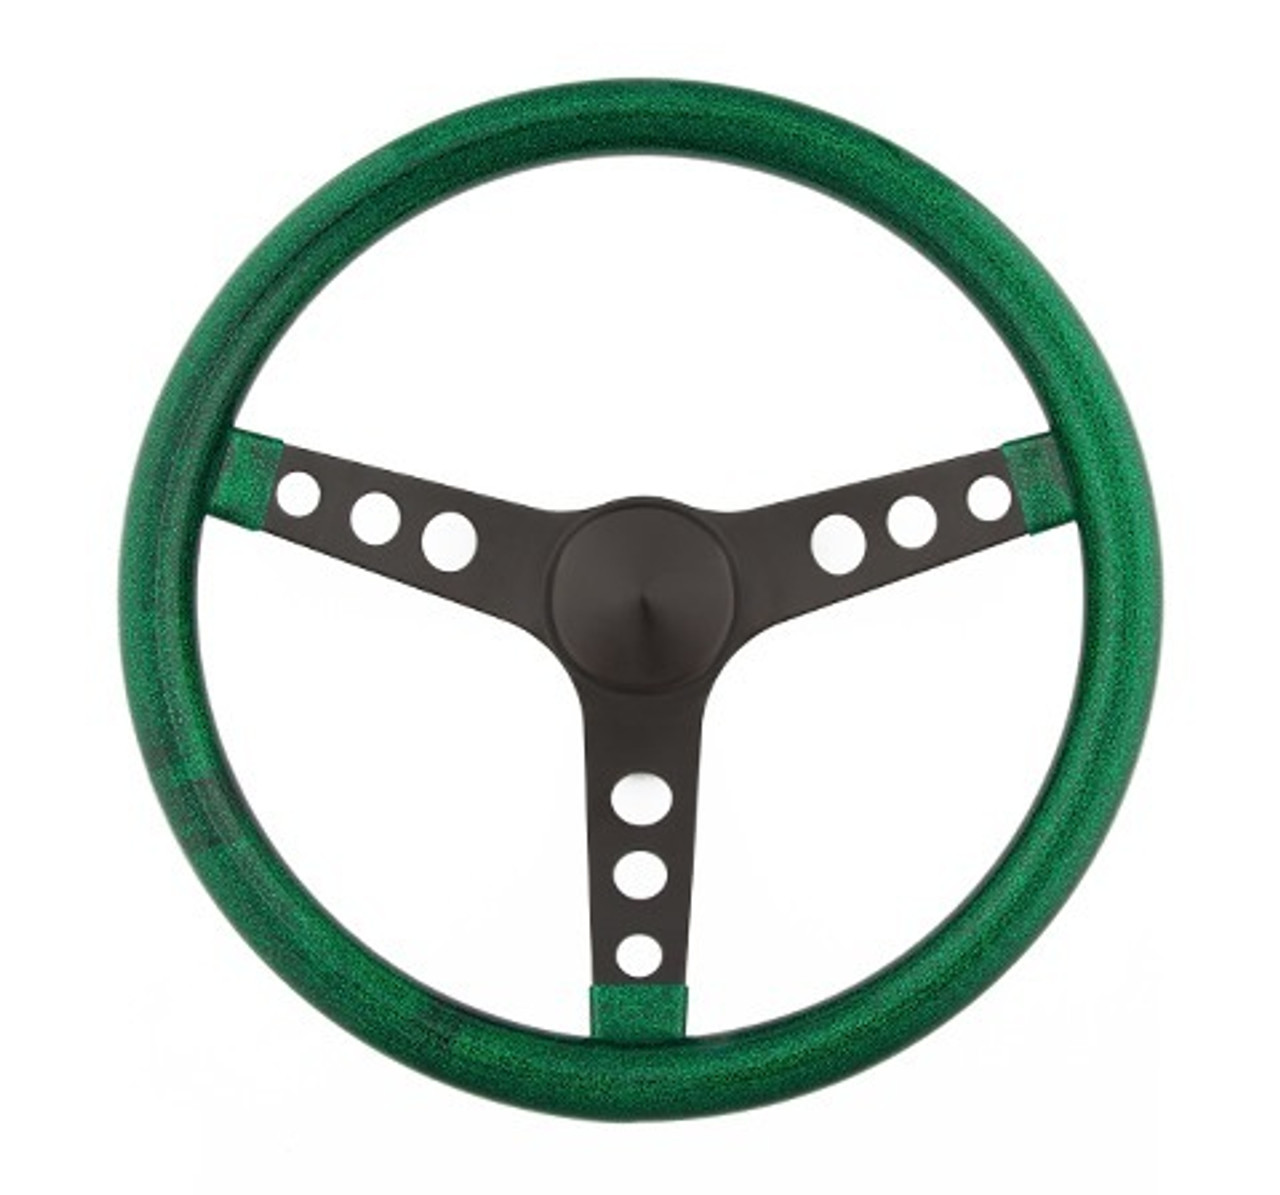 Steering Wheel Mtl Flake Green/Spoke Blk 13.5